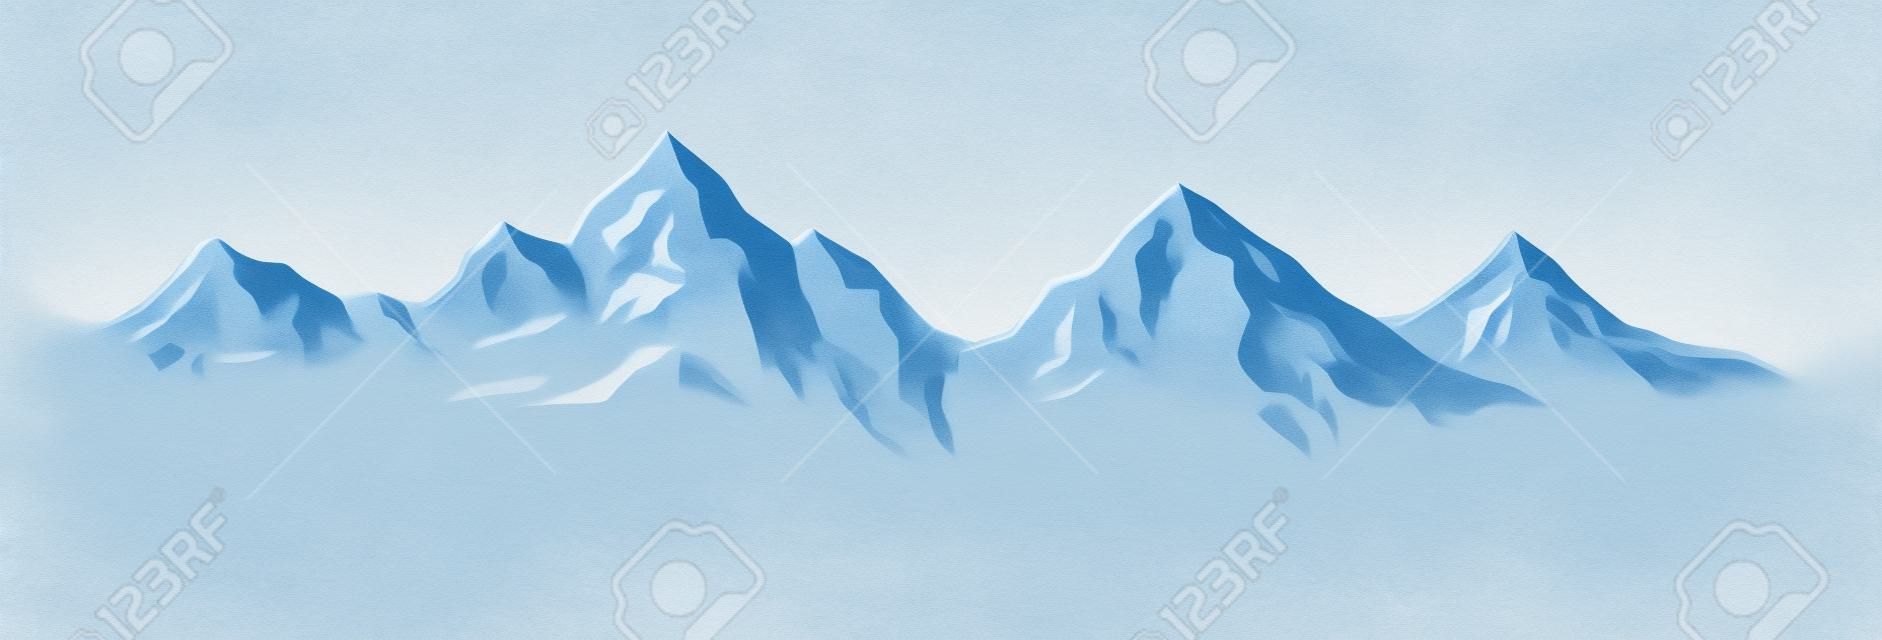 Illustration – Winter mountains